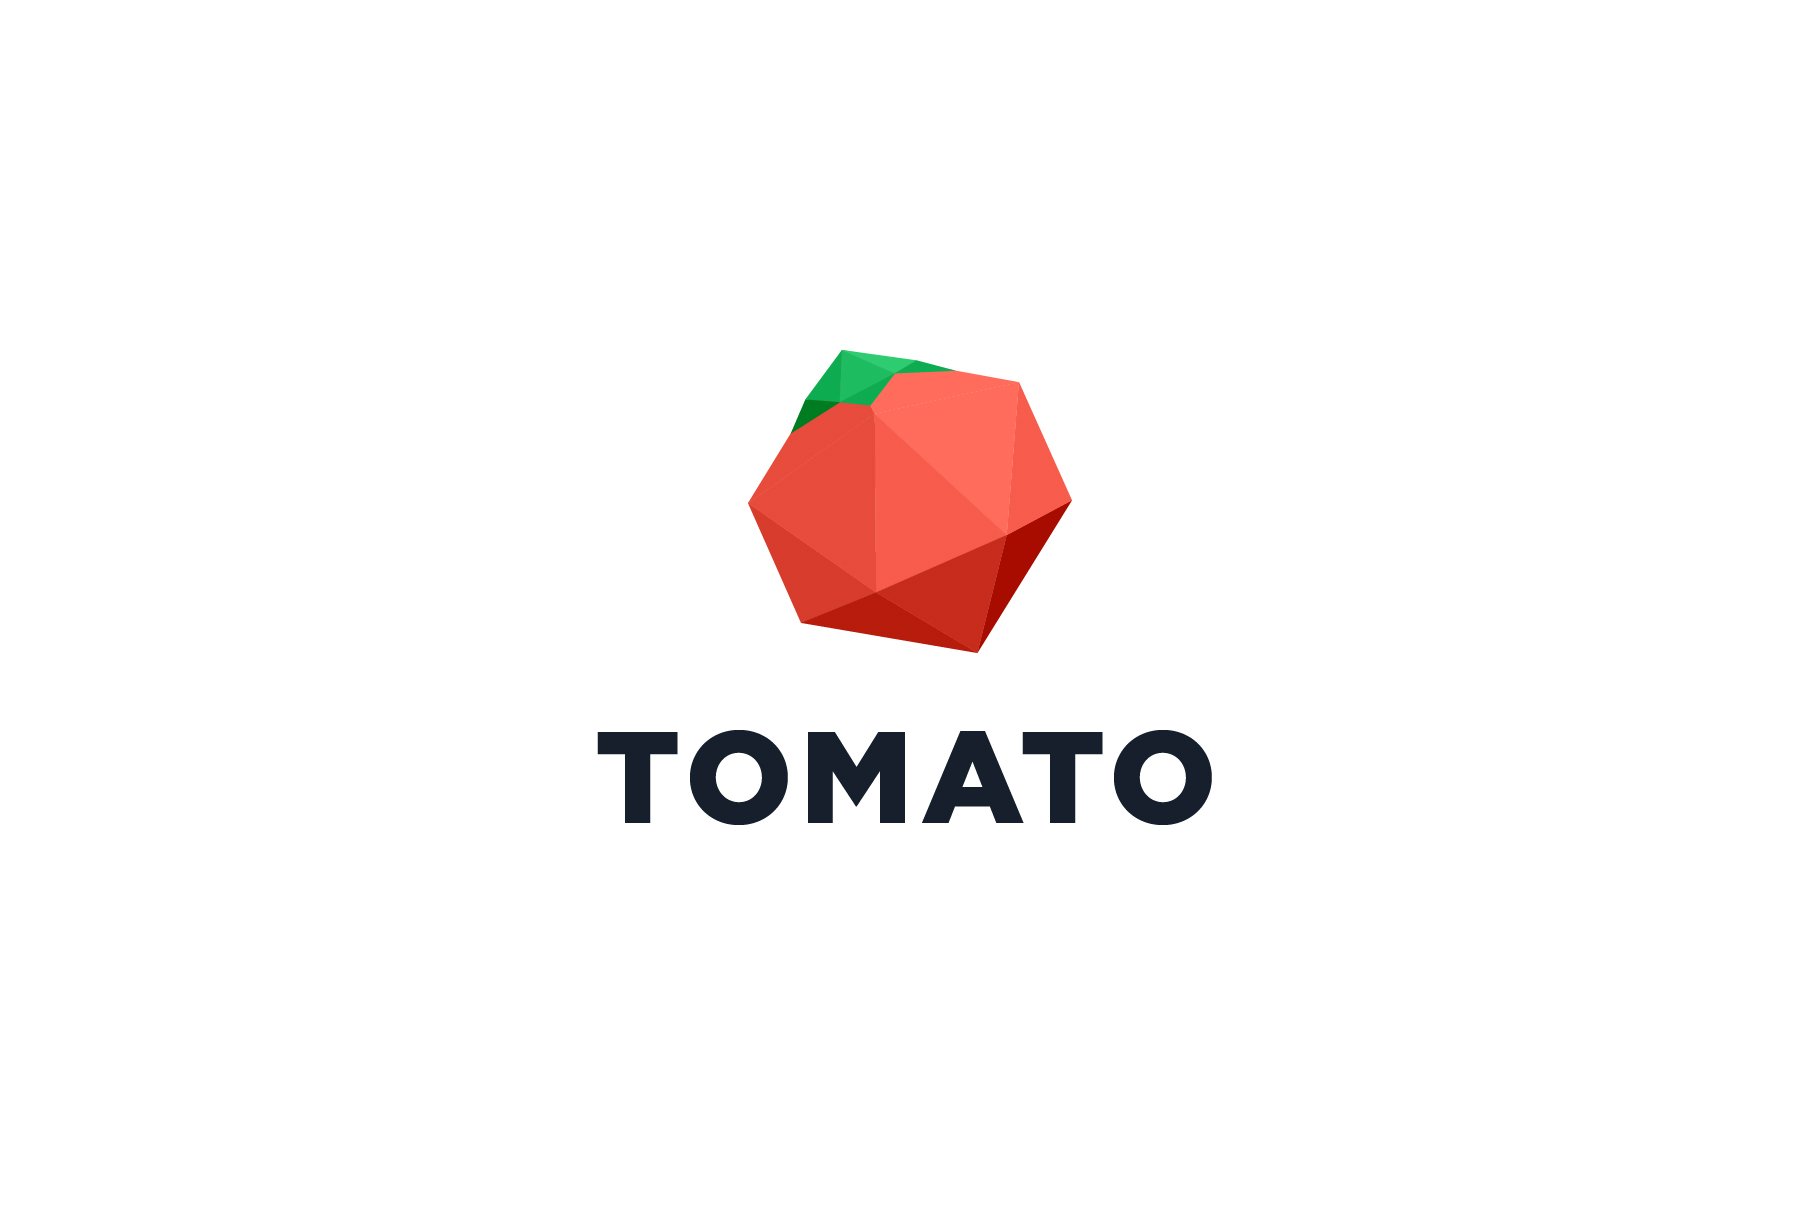 Tomato Logo cover image.